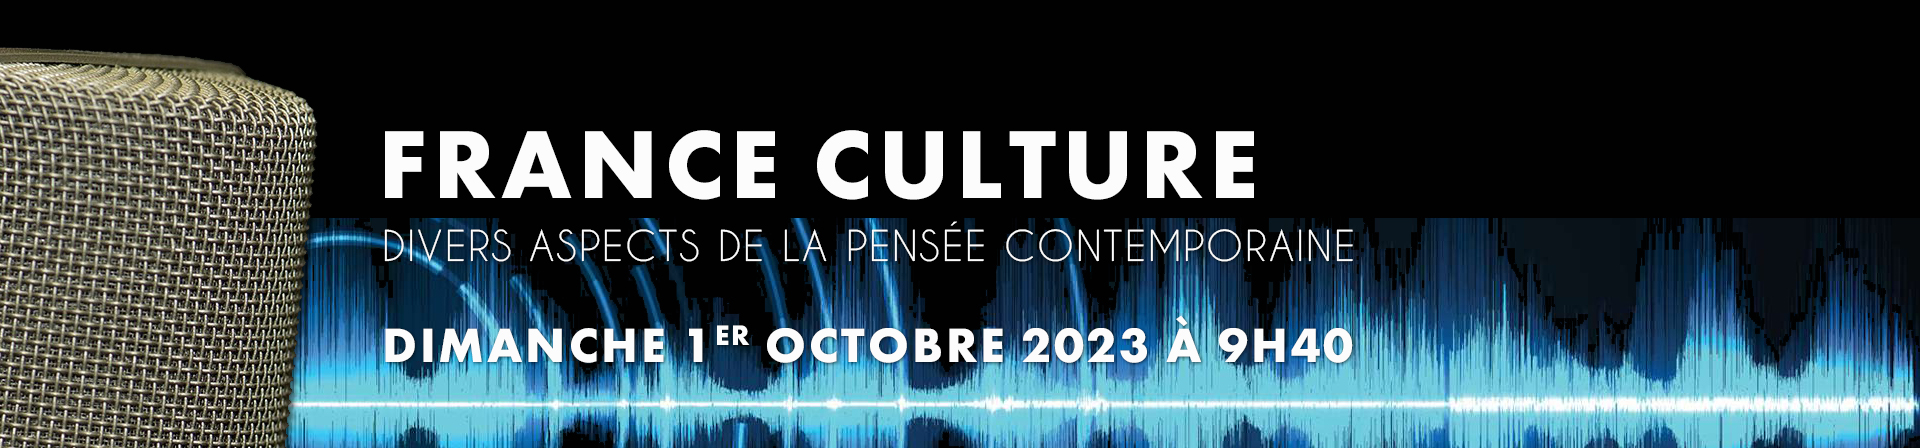 Divers aspects de la pensée contemporaine. Émission du dimanche 1er octobre 2023 à 9h40 sur France Culture